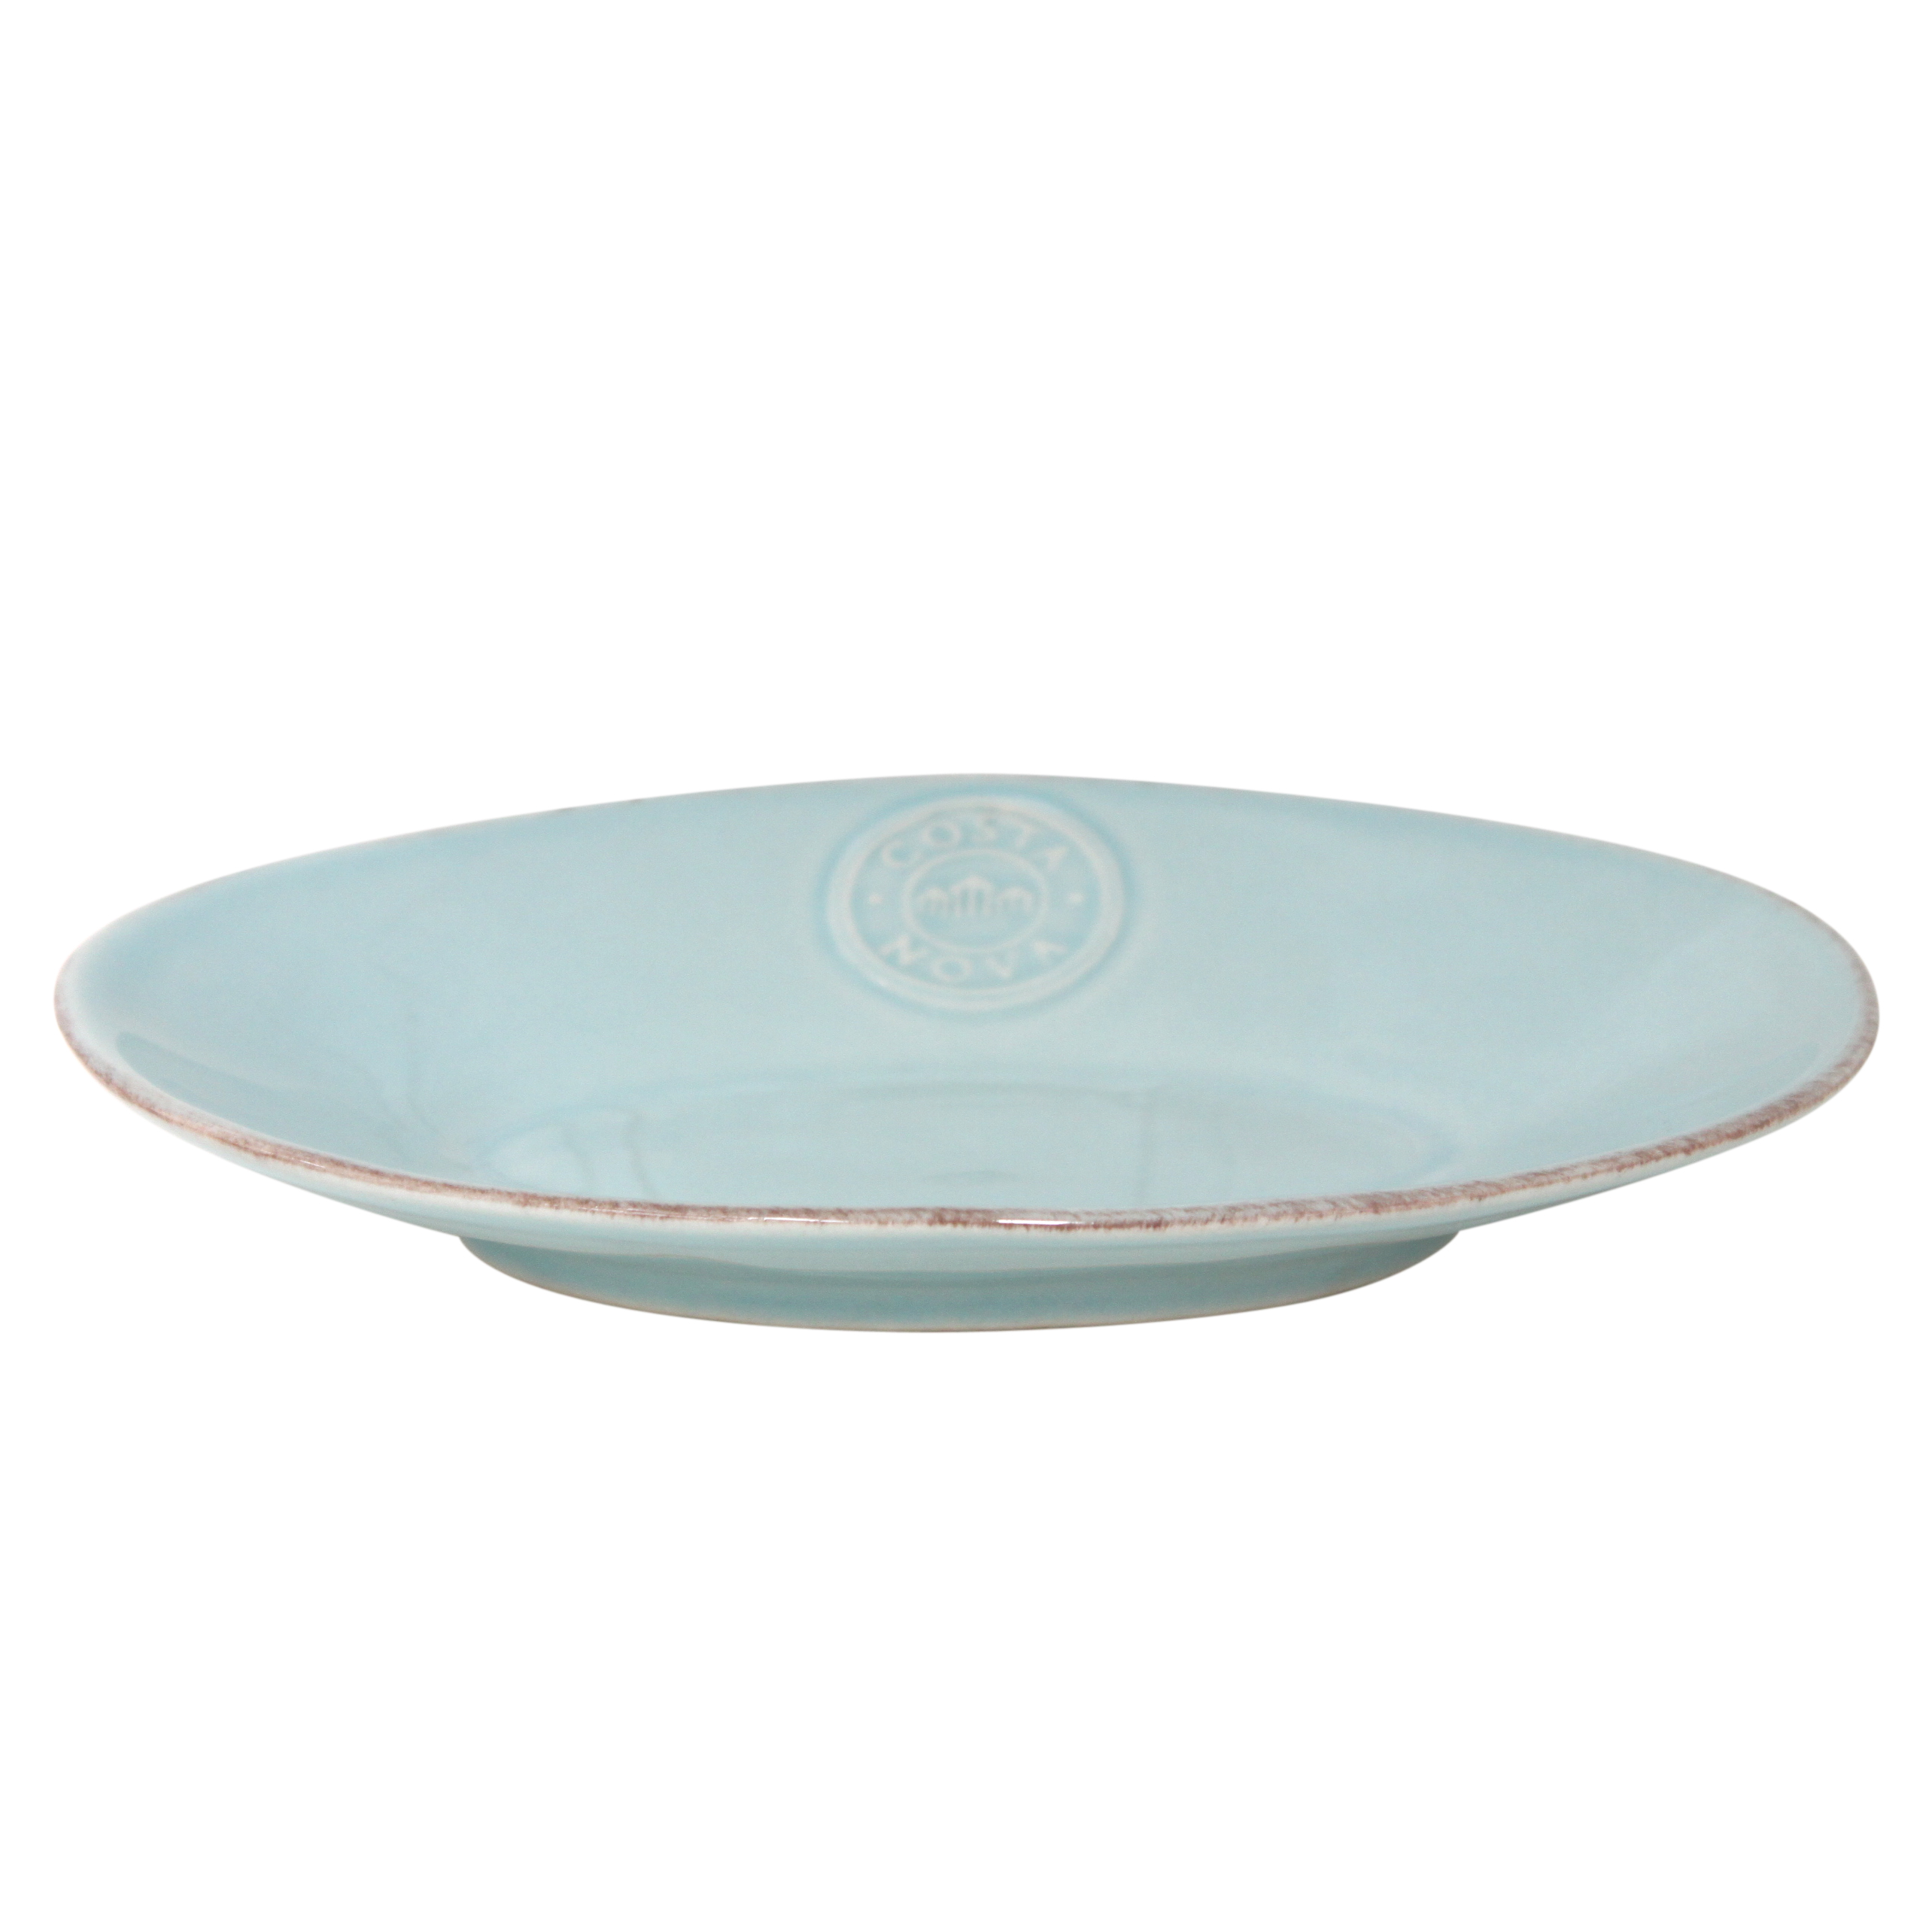 Nova Turquoise Oval Platter Small 20cm Gift